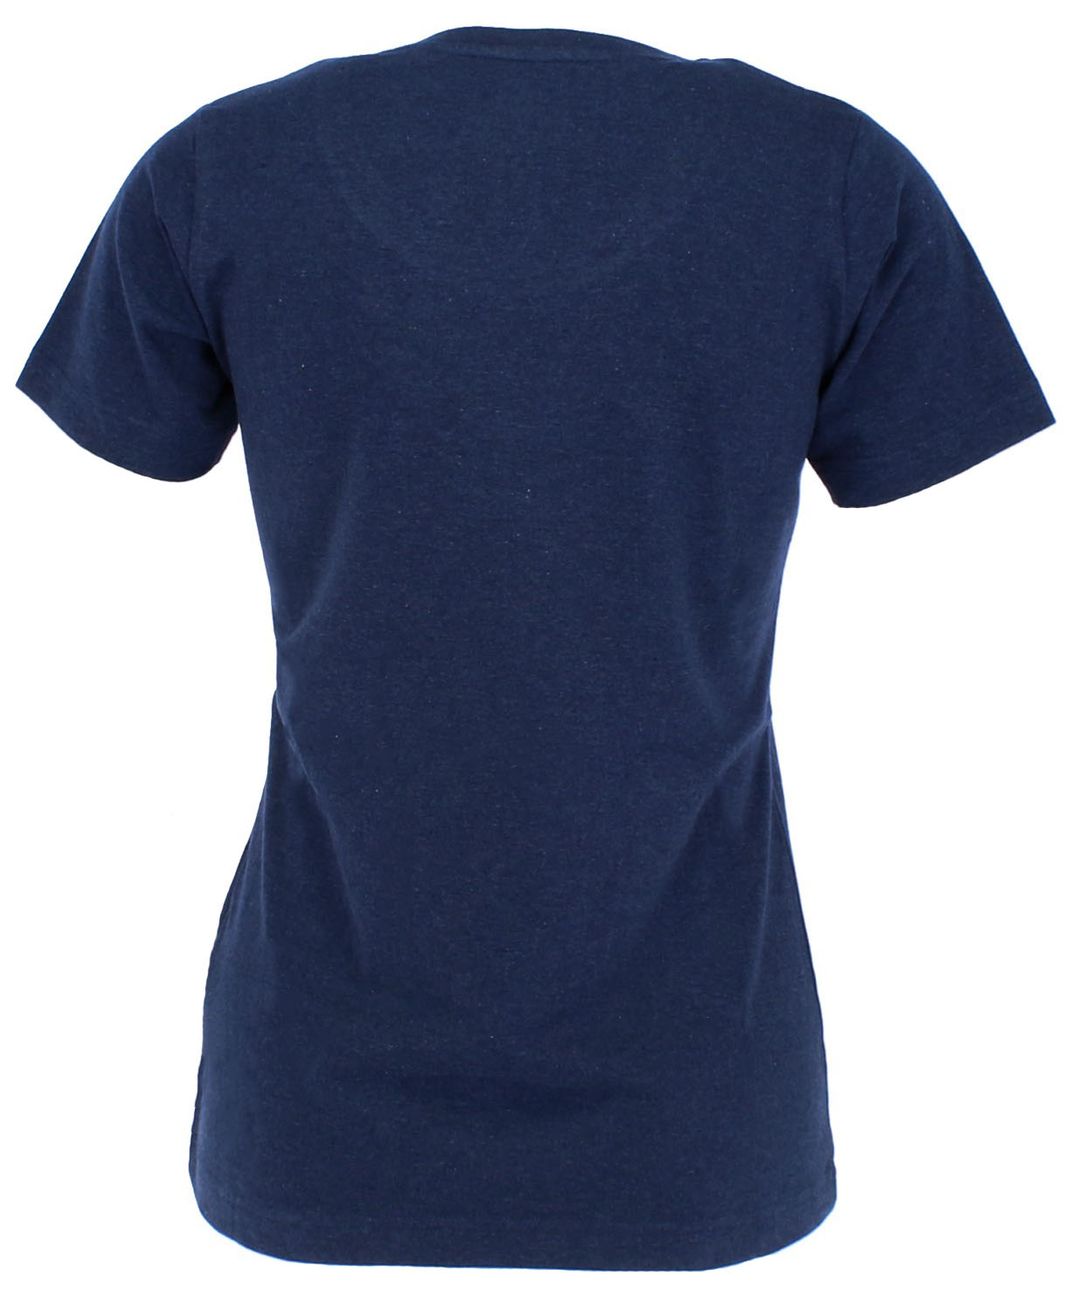 ELKLINE INMYMIND Damen Bulli T-Shirt aus reiner Bio-Baumwolle - Elkline - SAGATOO - 4051533613225